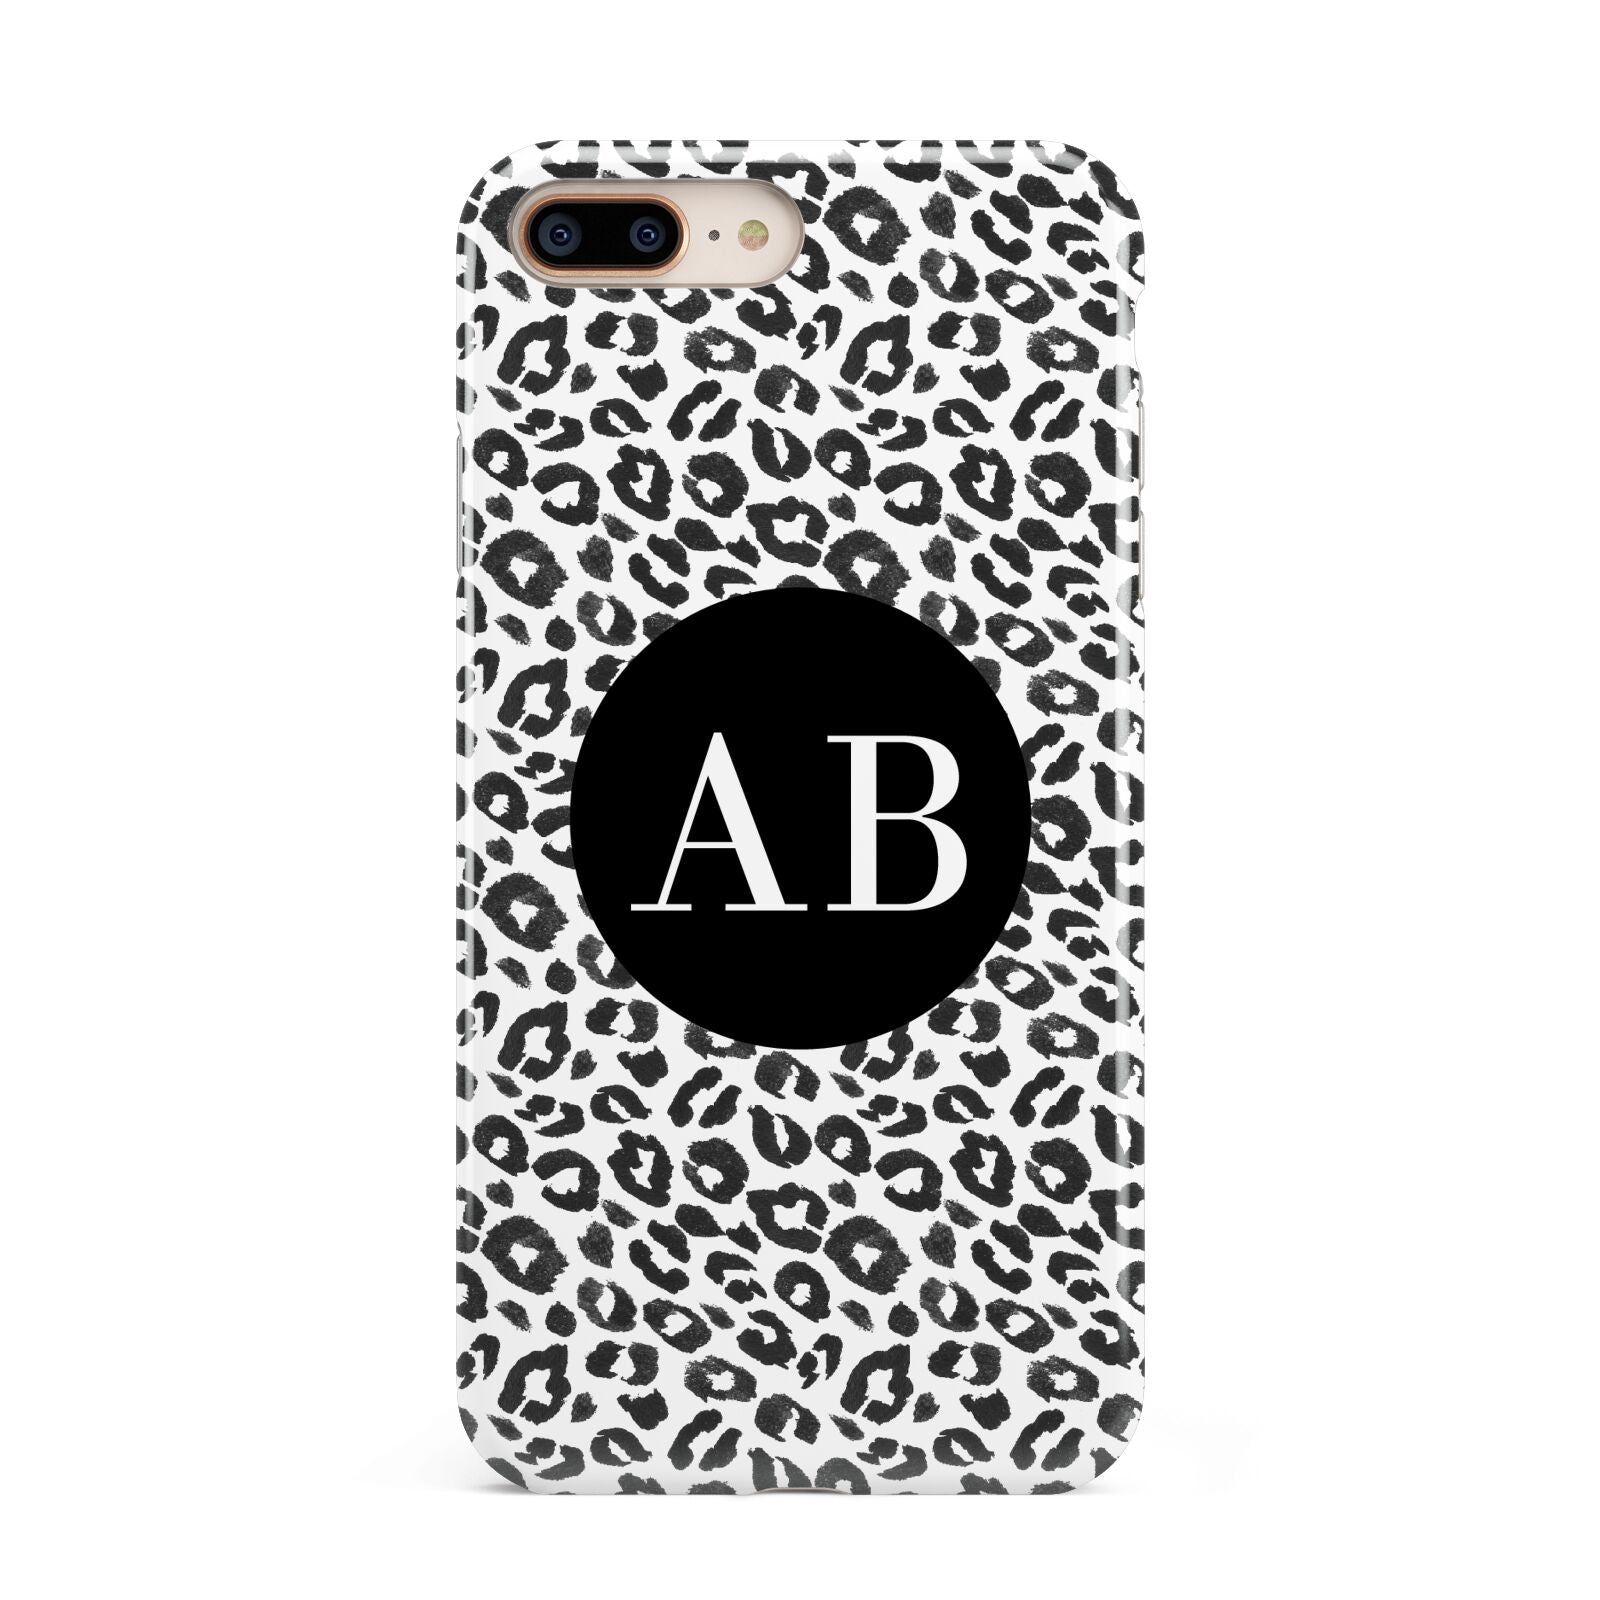 Leopard Print Black and White Apple iPhone 7 8 Plus 3D Tough Case